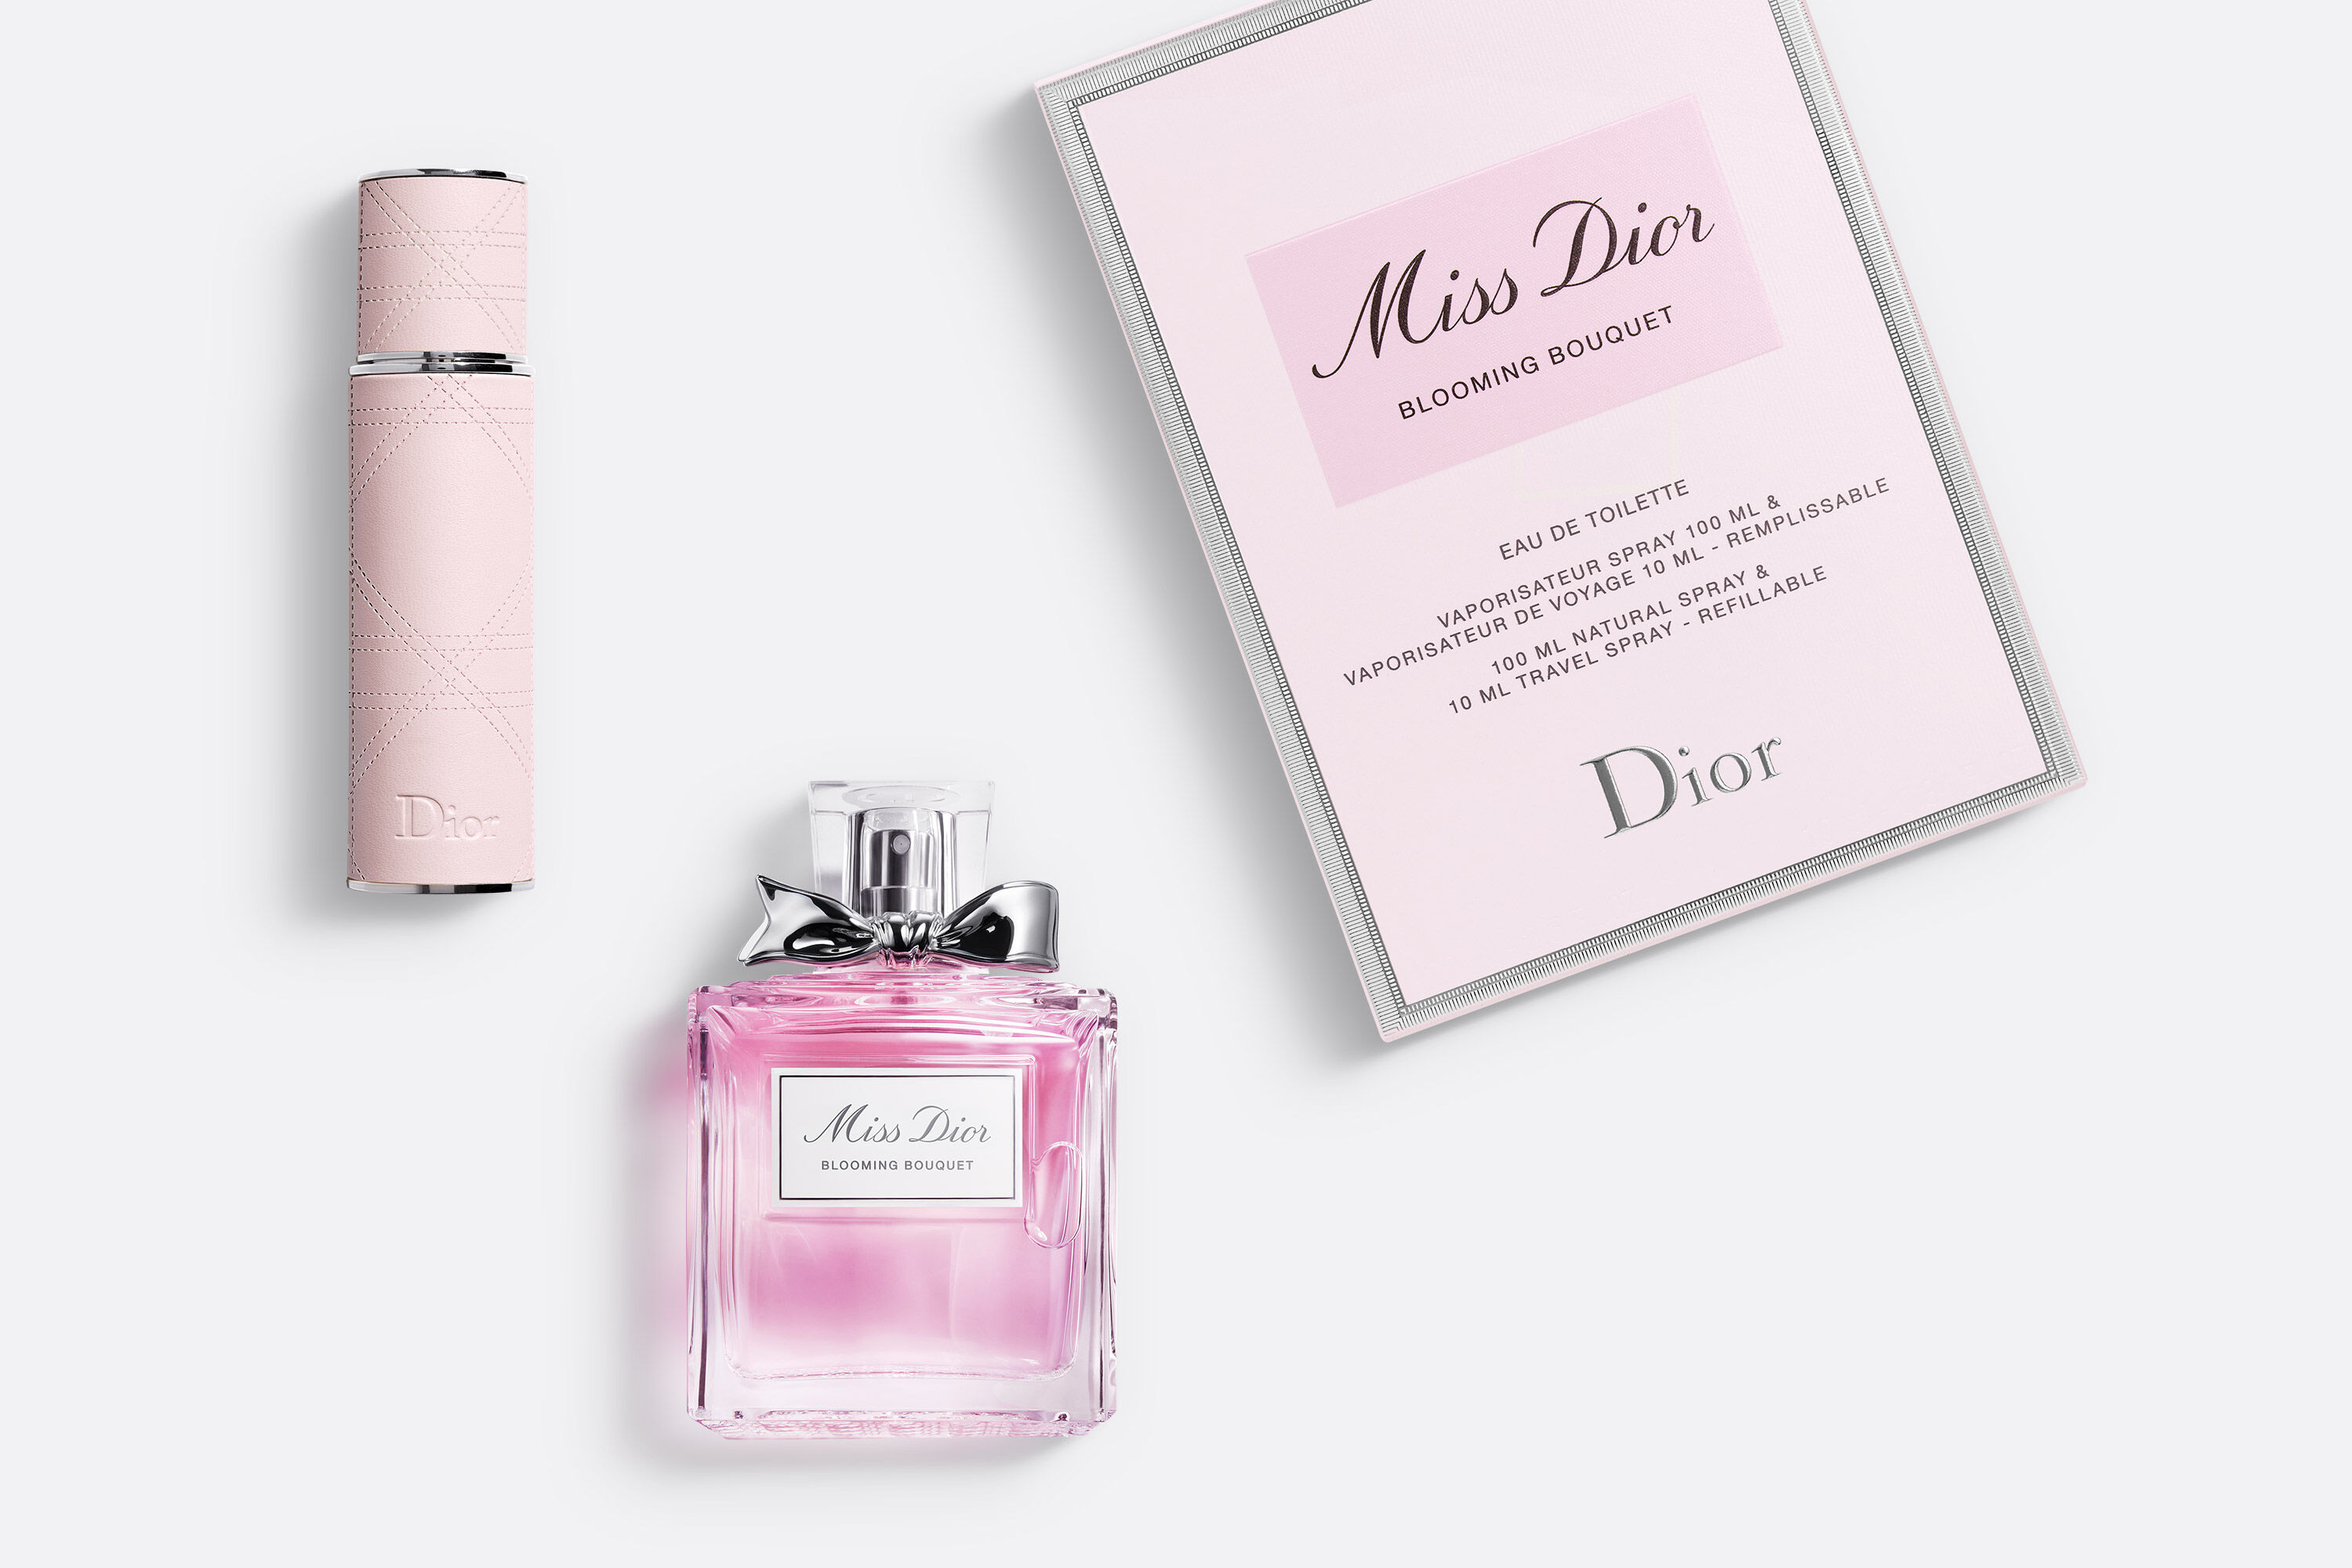 Gift Sets by Dior: Fragrance, Makeup & Skincare Sets